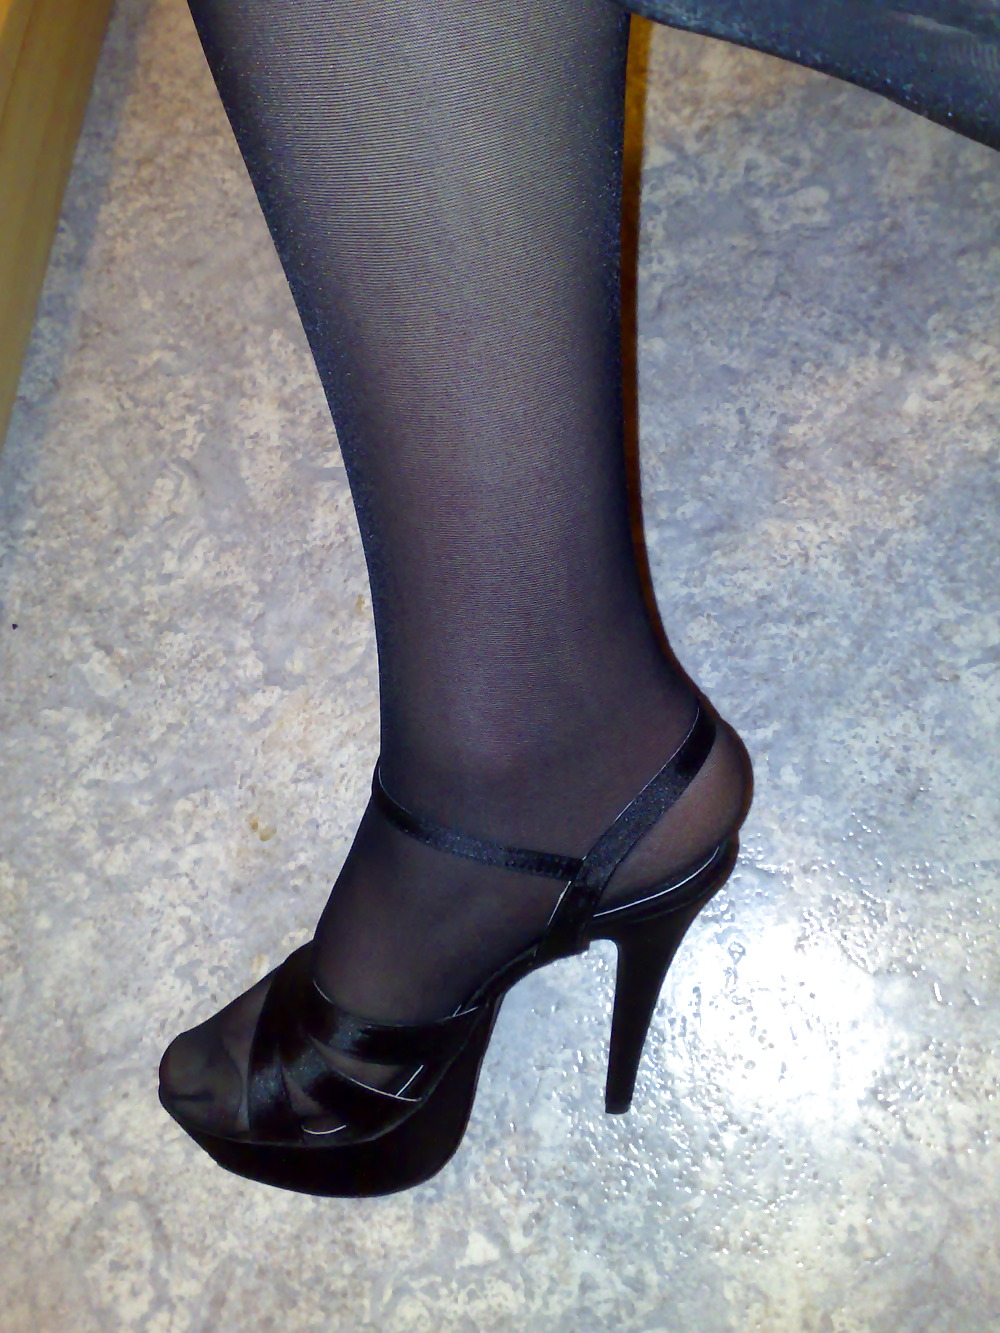 Silky black stockings & black high heels #135612